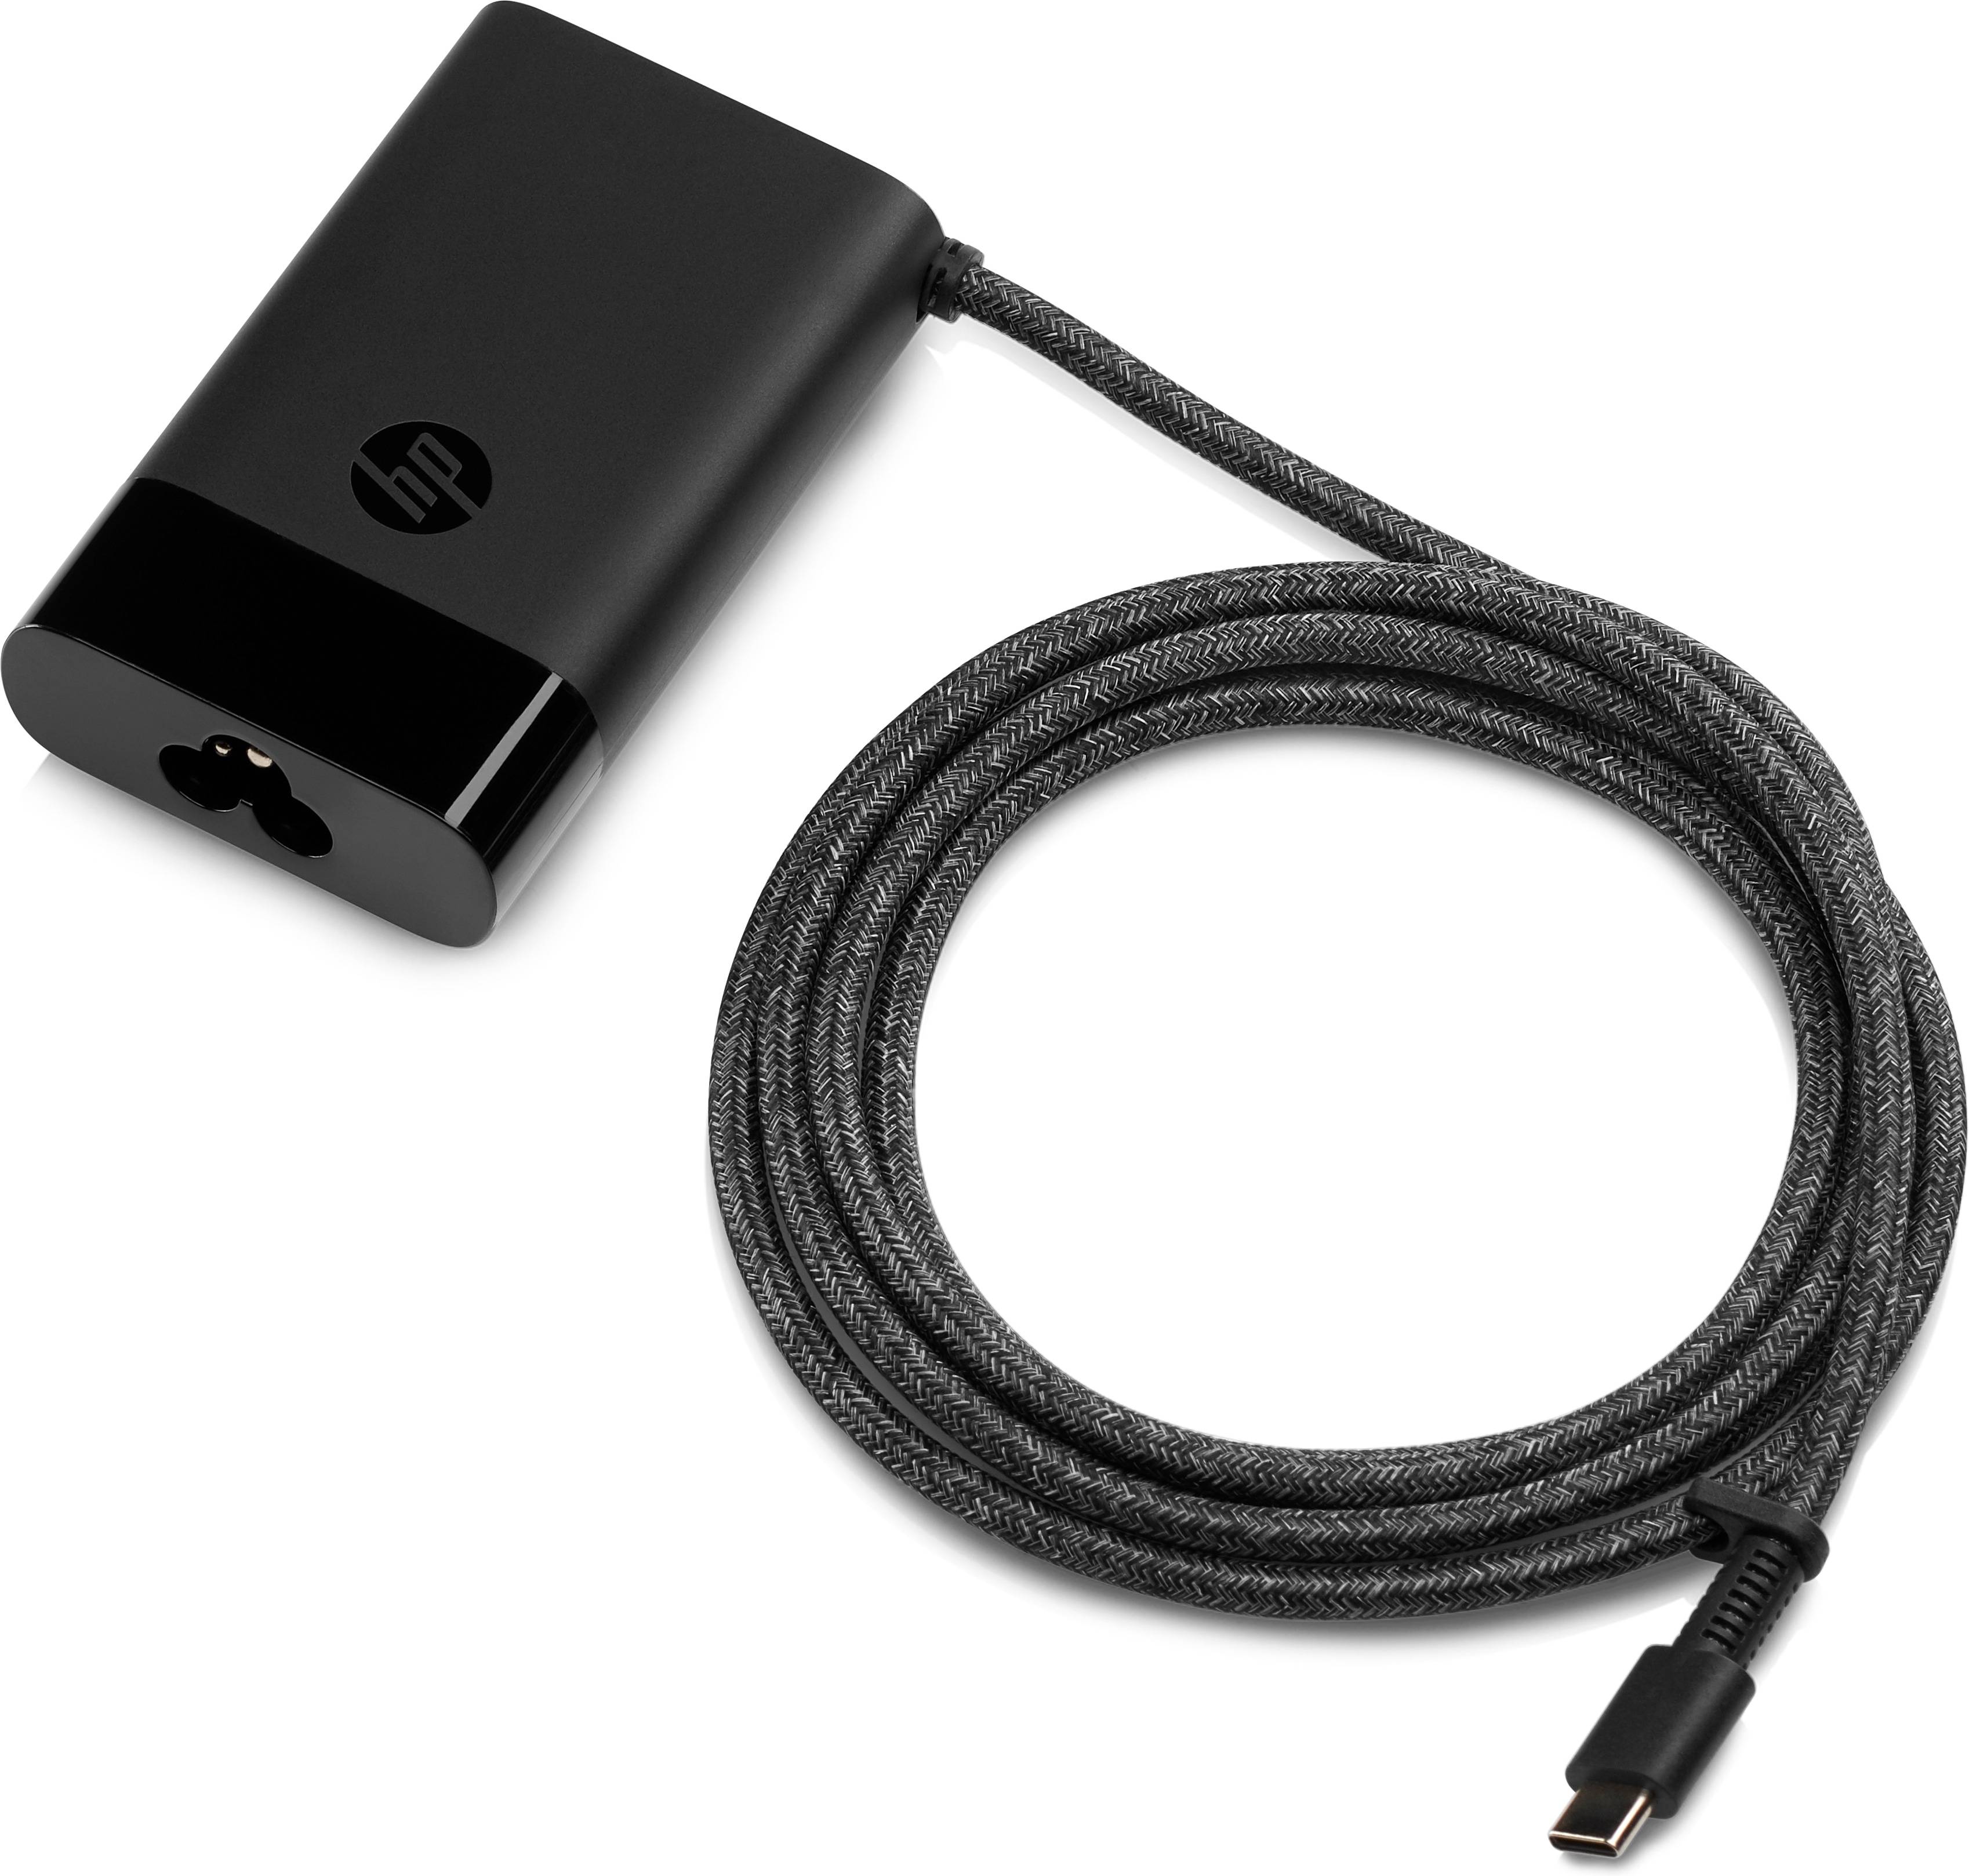 Rca Informatique - image du produit : USB-C 65W LAPTOP CHARGER EUROPE